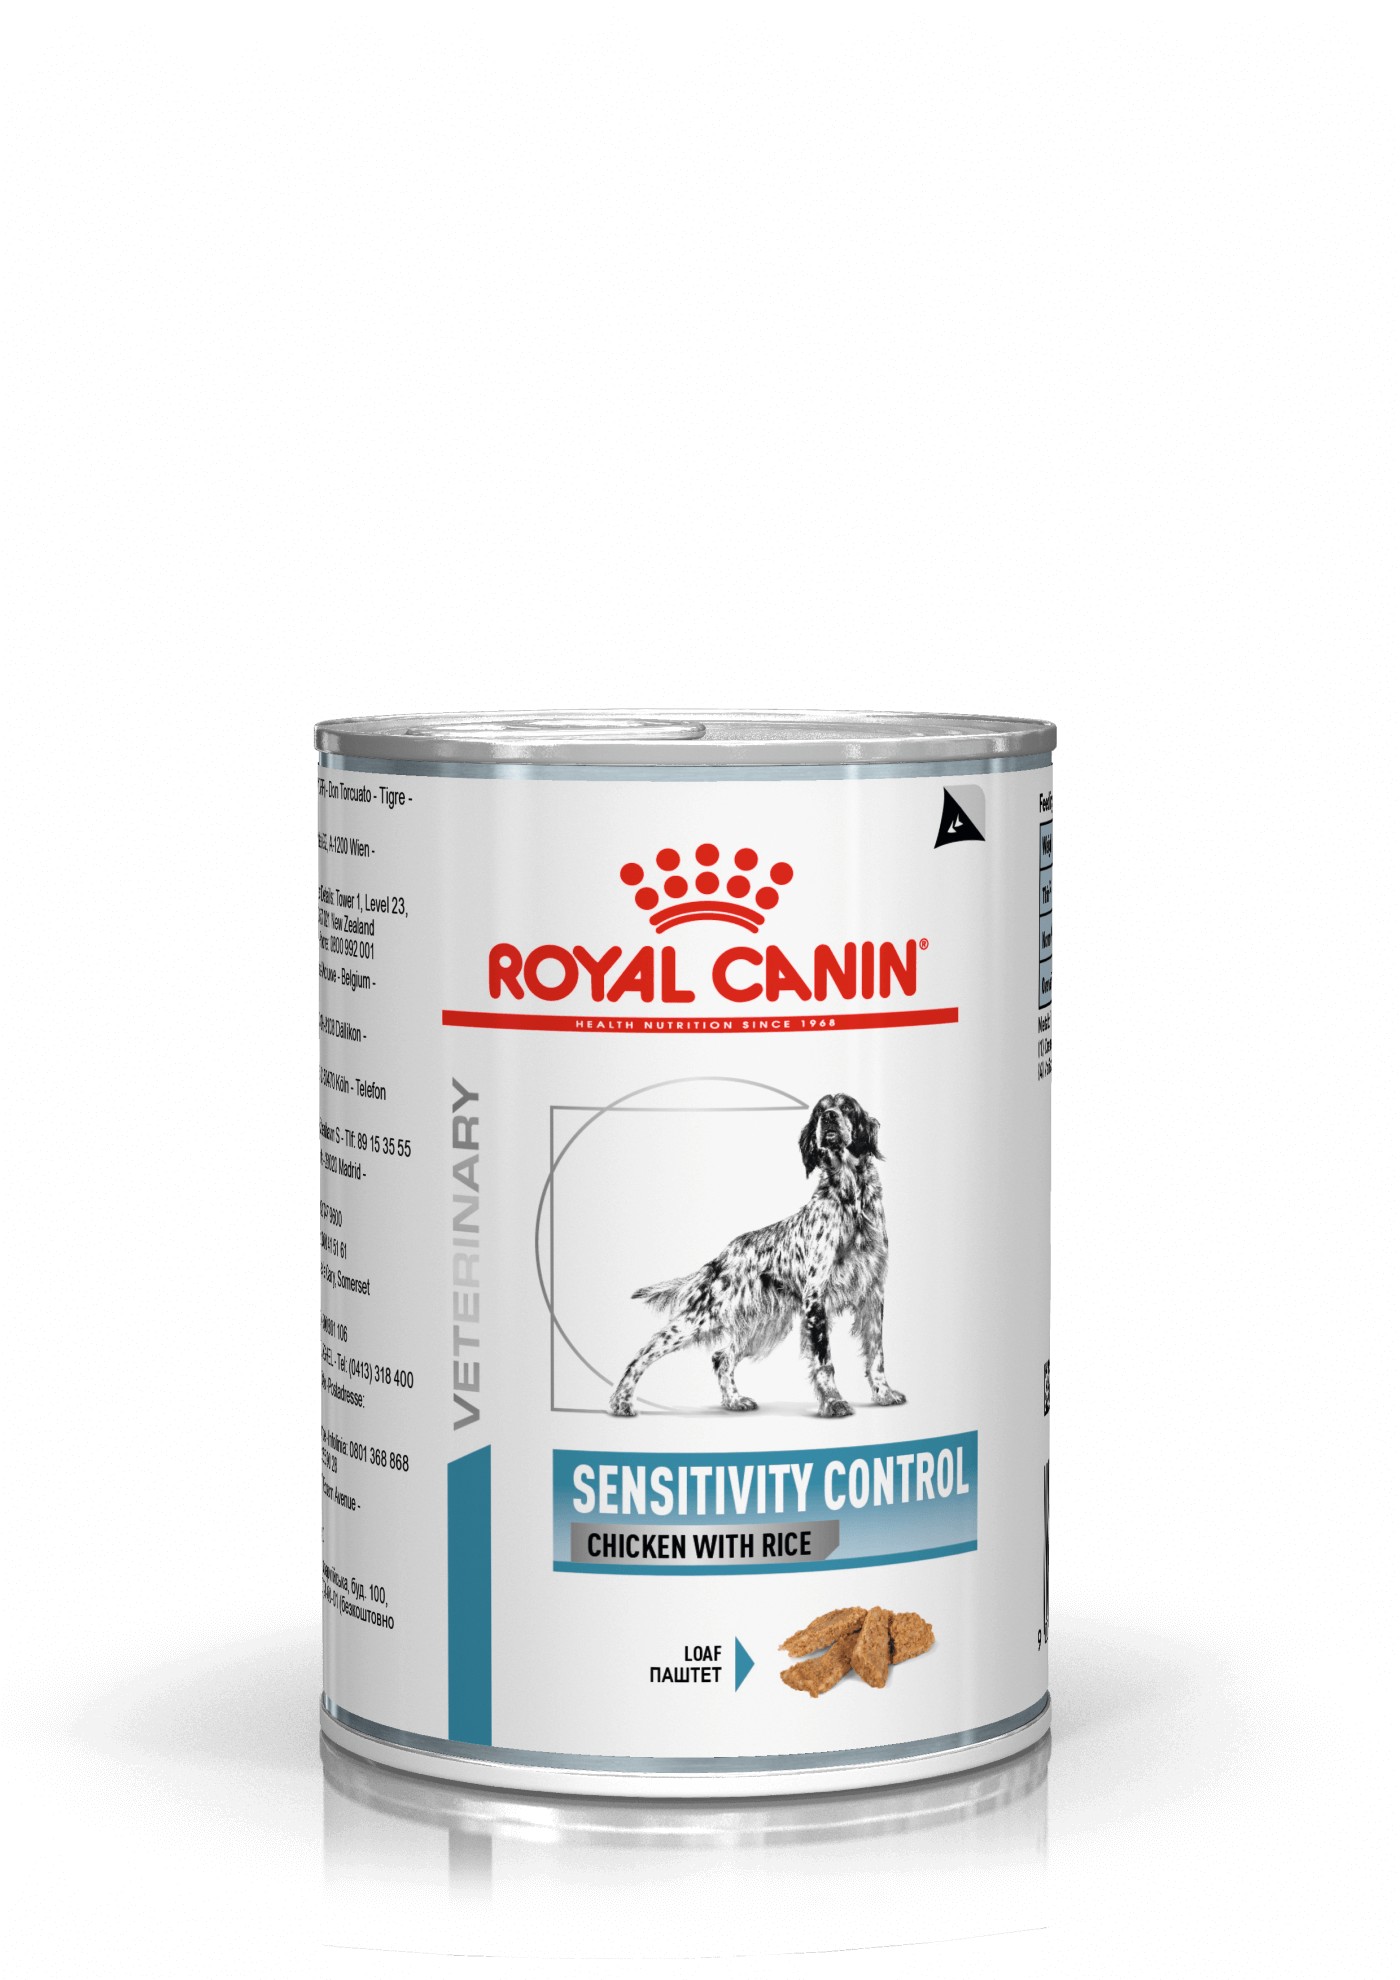 Royal Canin Veterinary Sensitivity Control poulet avec riz pâtée pour chien